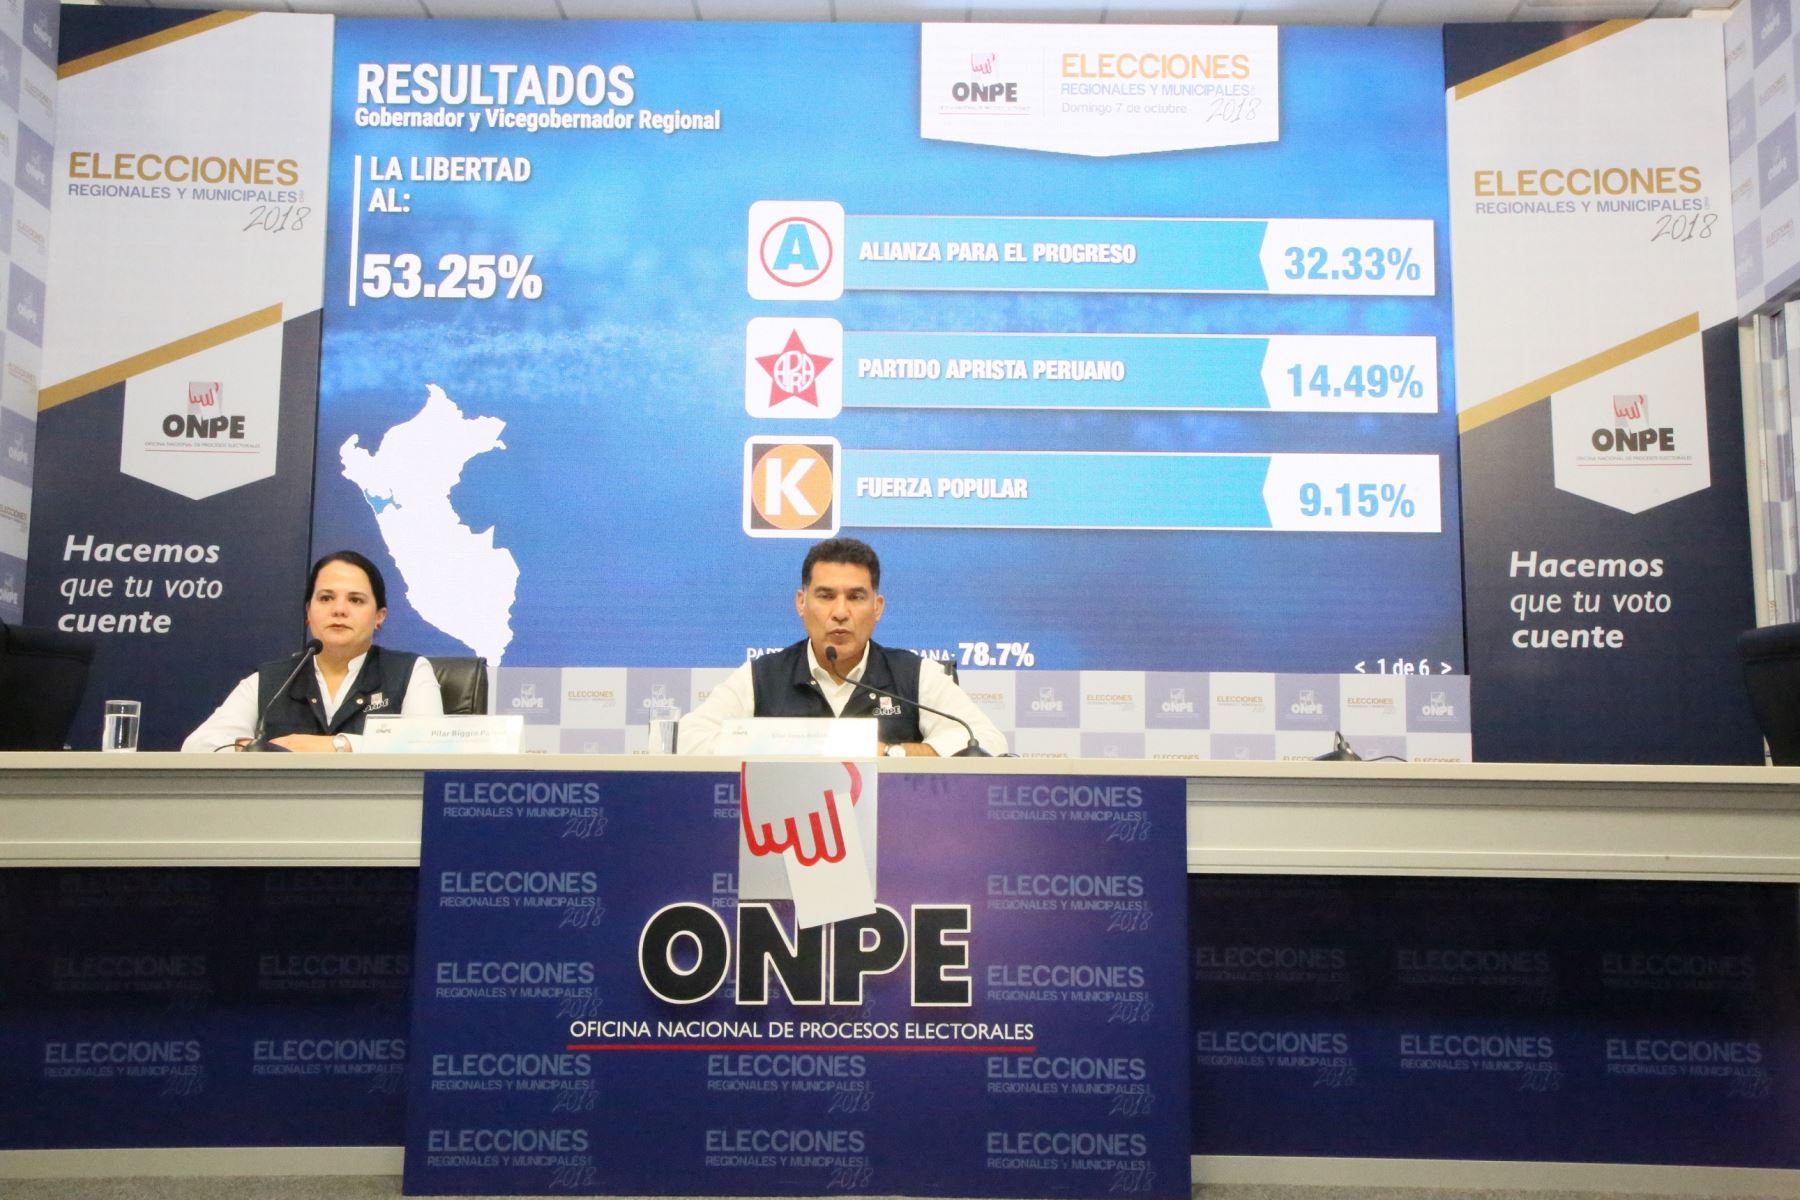 Oficina Nacional de Procesos Electorales emitió nuevos resultados de las elecciones a nivel regional celebradas el 7 de octubre.